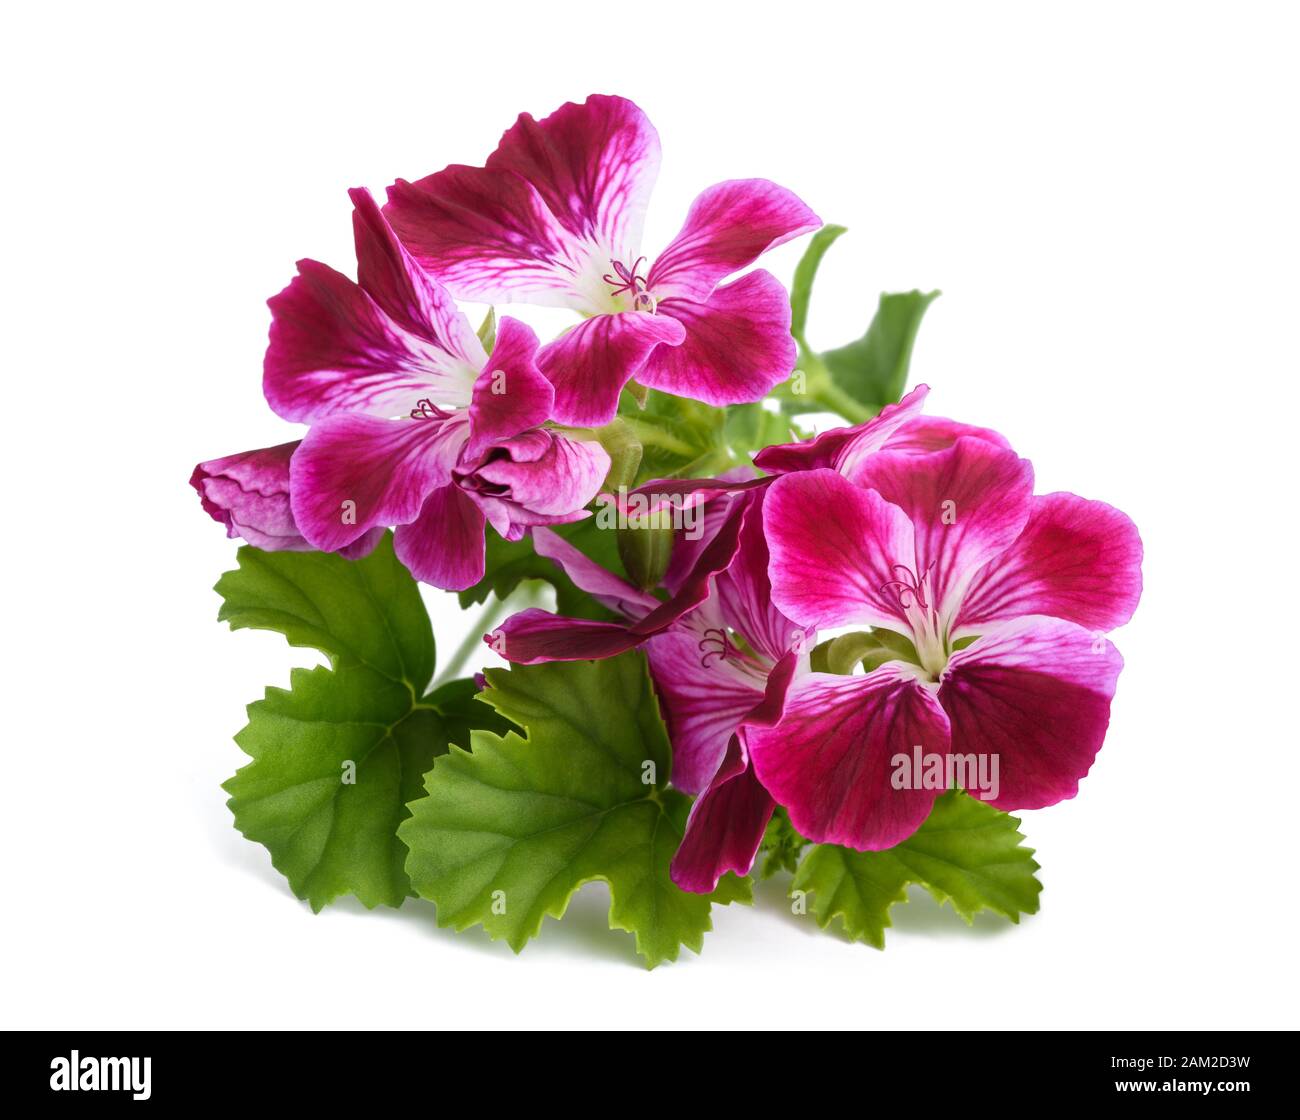 Geranium flowers isolated on white background Stock Photo